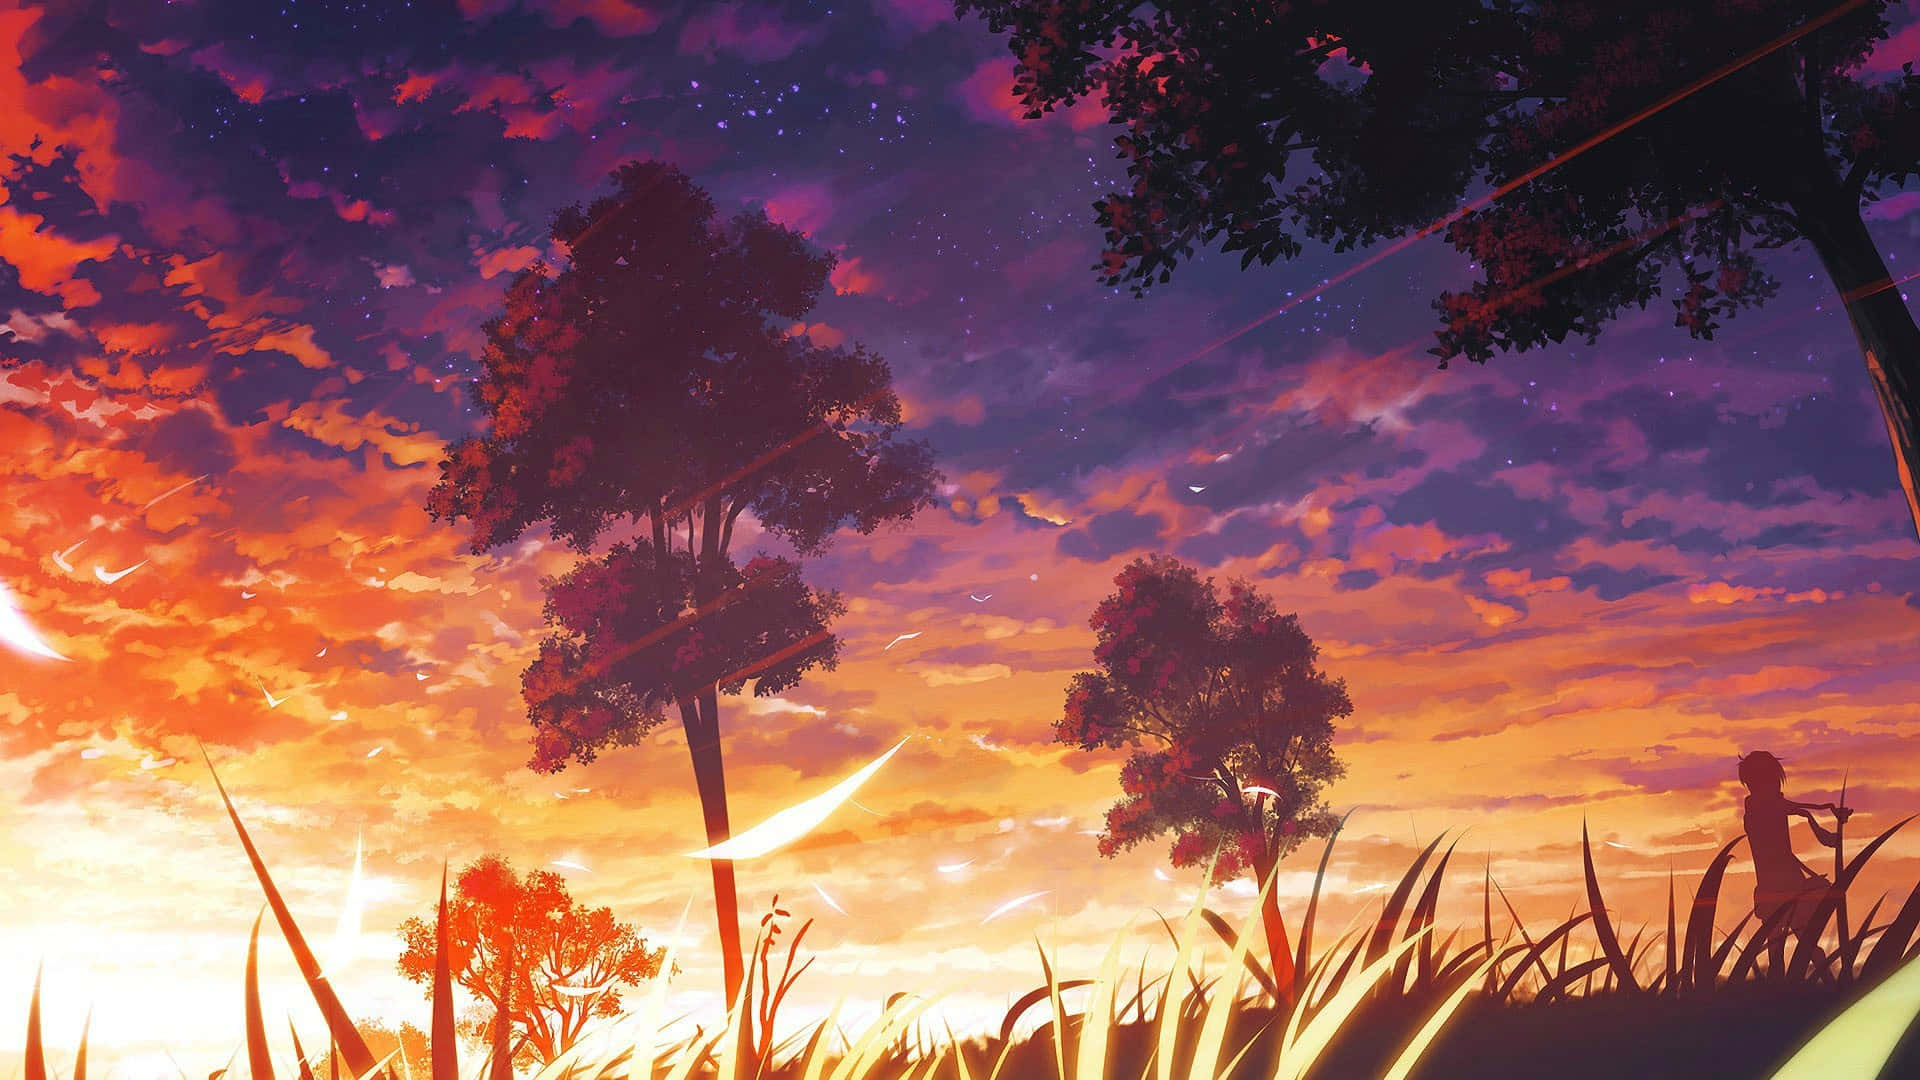 Erlebensie Einen Atemberaubenden Himmel Mit Anime-charakteren Im Hintergrund!